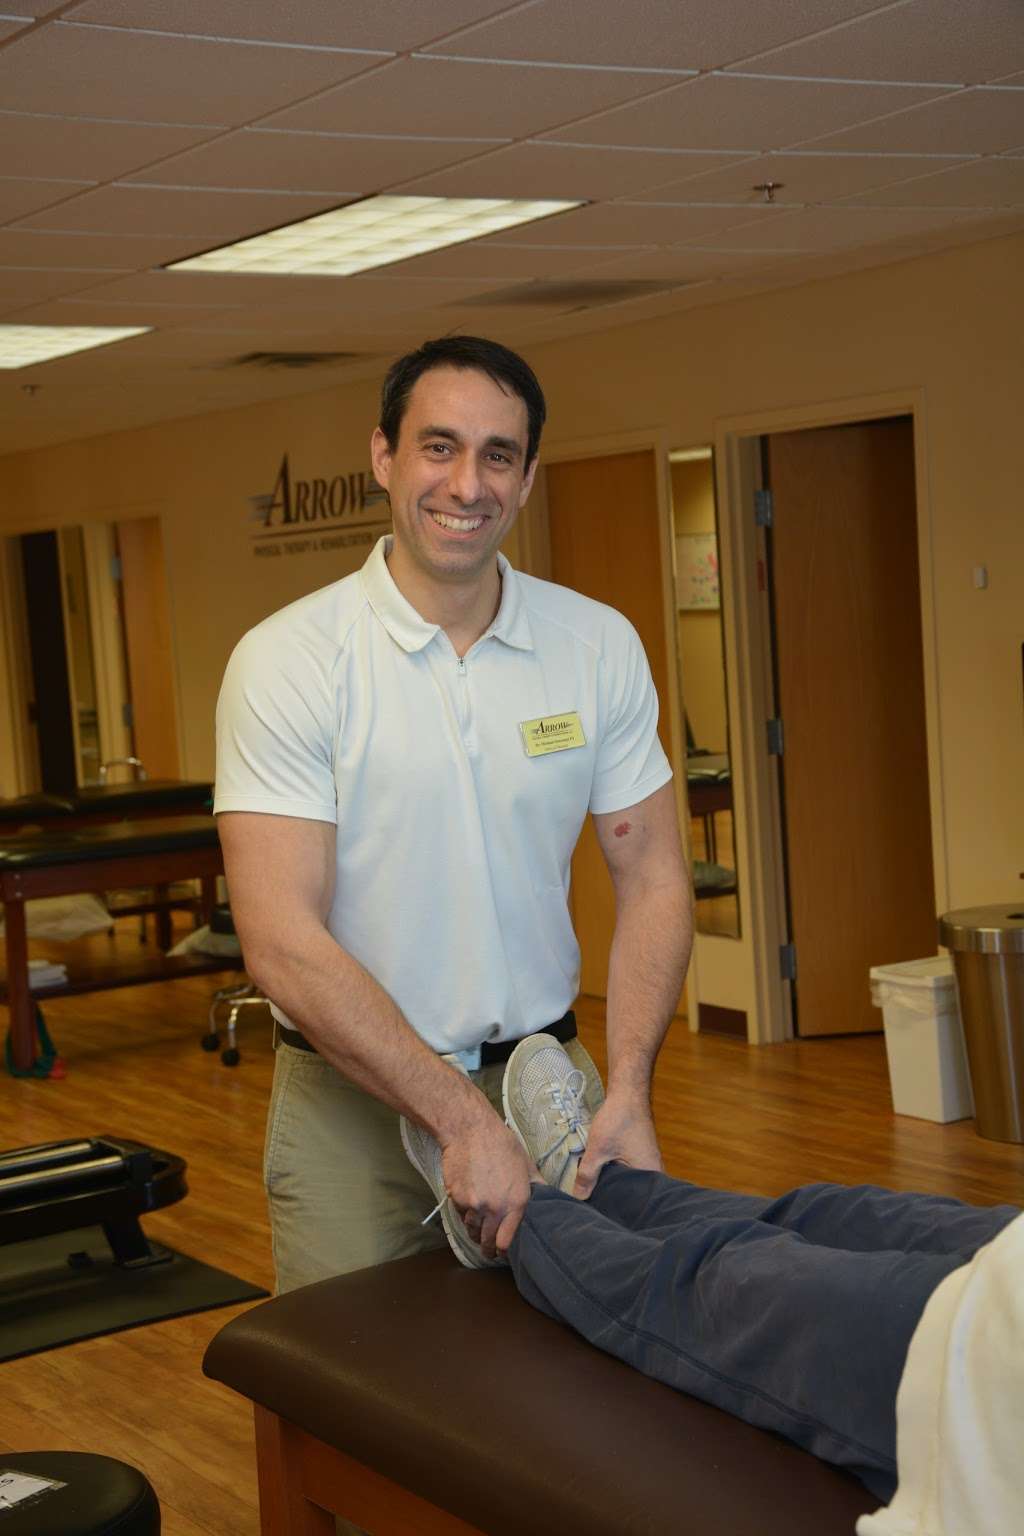 Arrow Physical Therapy & Rehabilitation - Edison | 3830 Park Ave # 202, Edison, NJ 08820, USA | Phone: (732) 494-0895